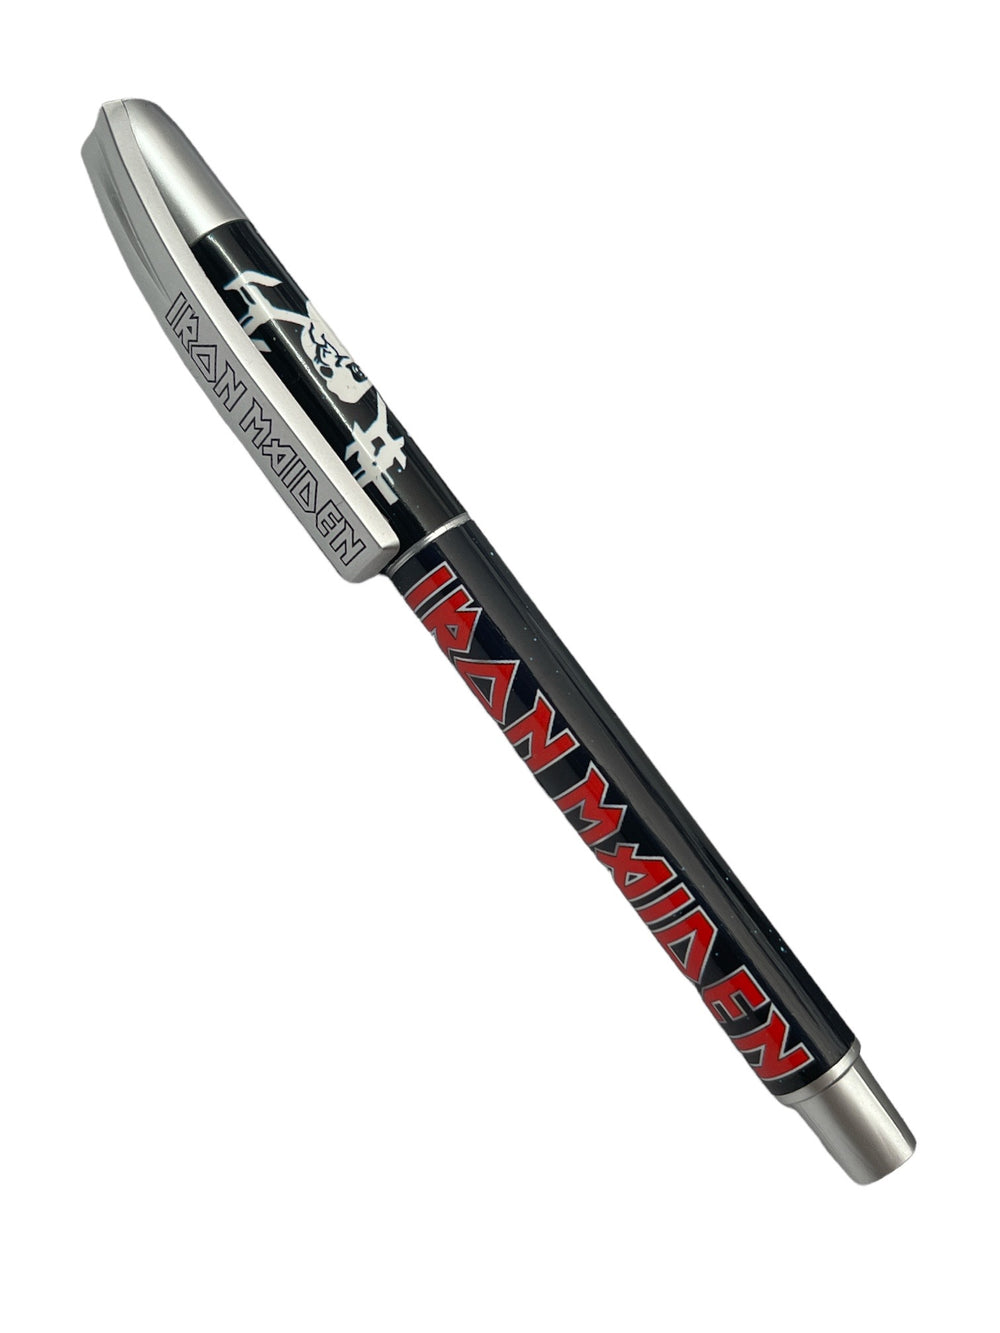 Iron Maiden Final Frontier Official Brand New Gel Pen